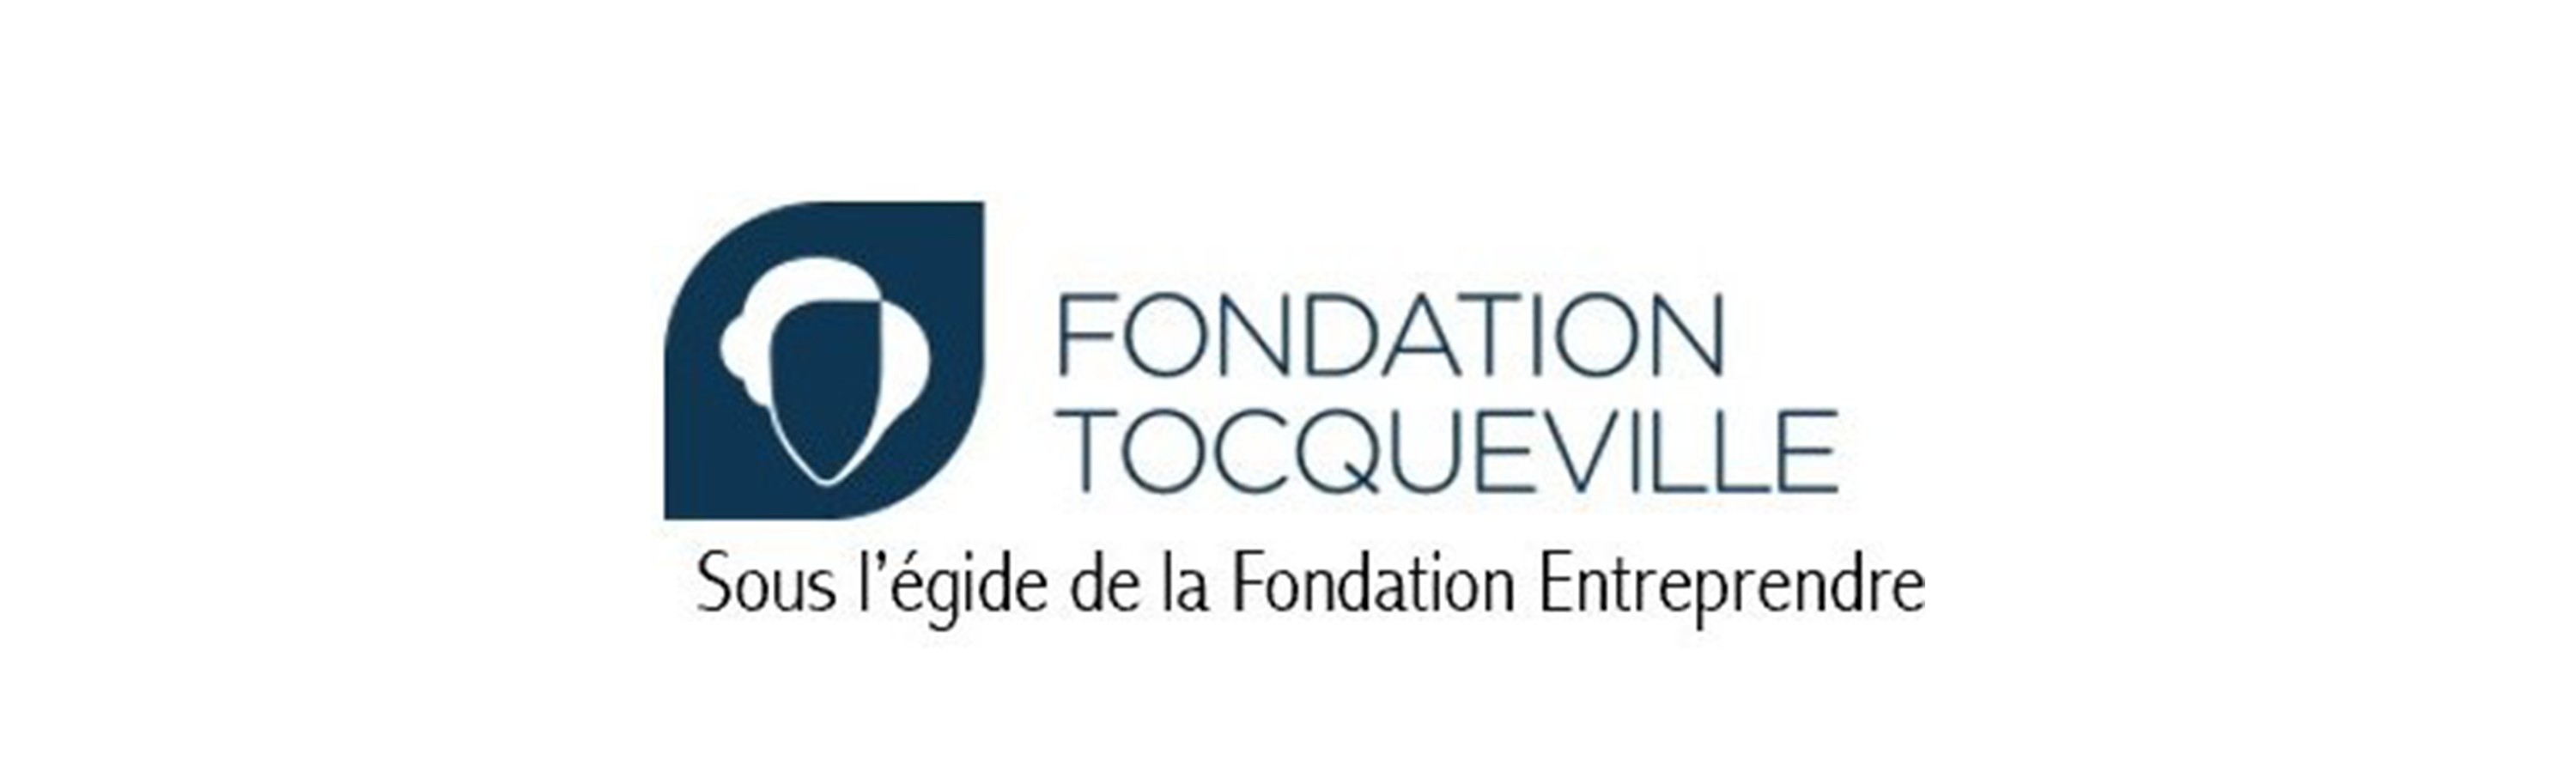 Bannière fondation tocqueville_VF.png